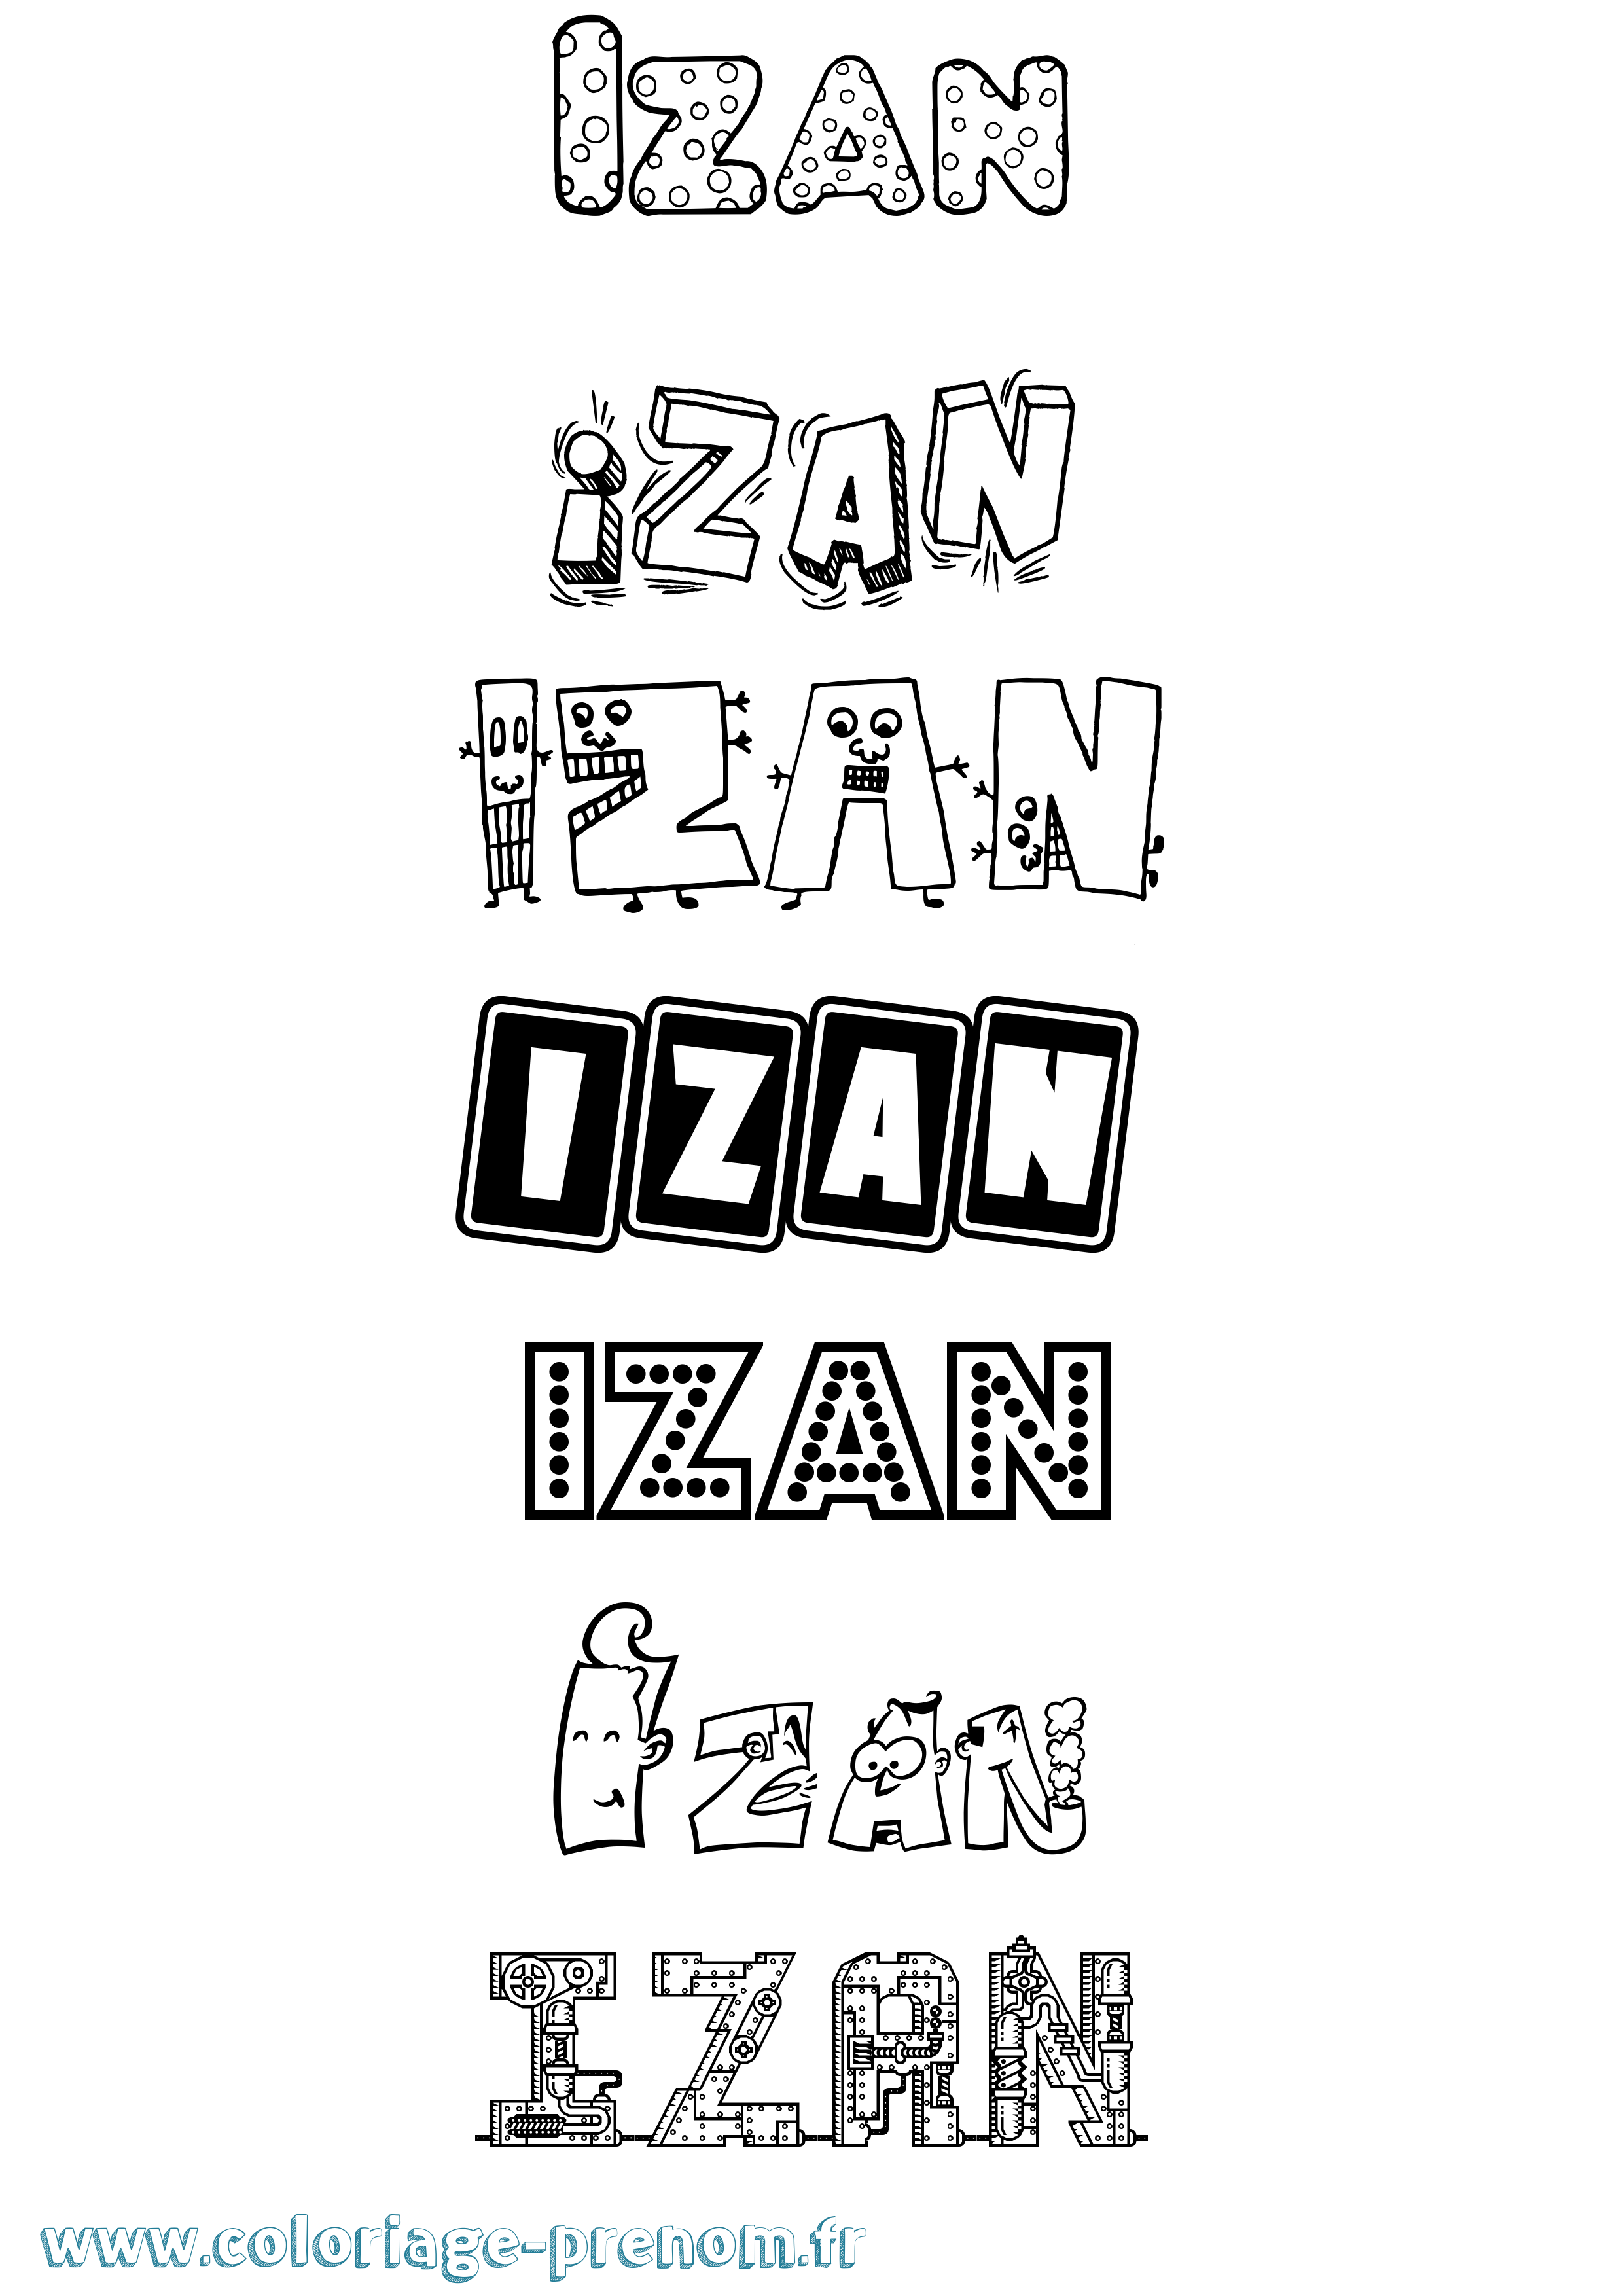 Coloriage prénom Izan Fun